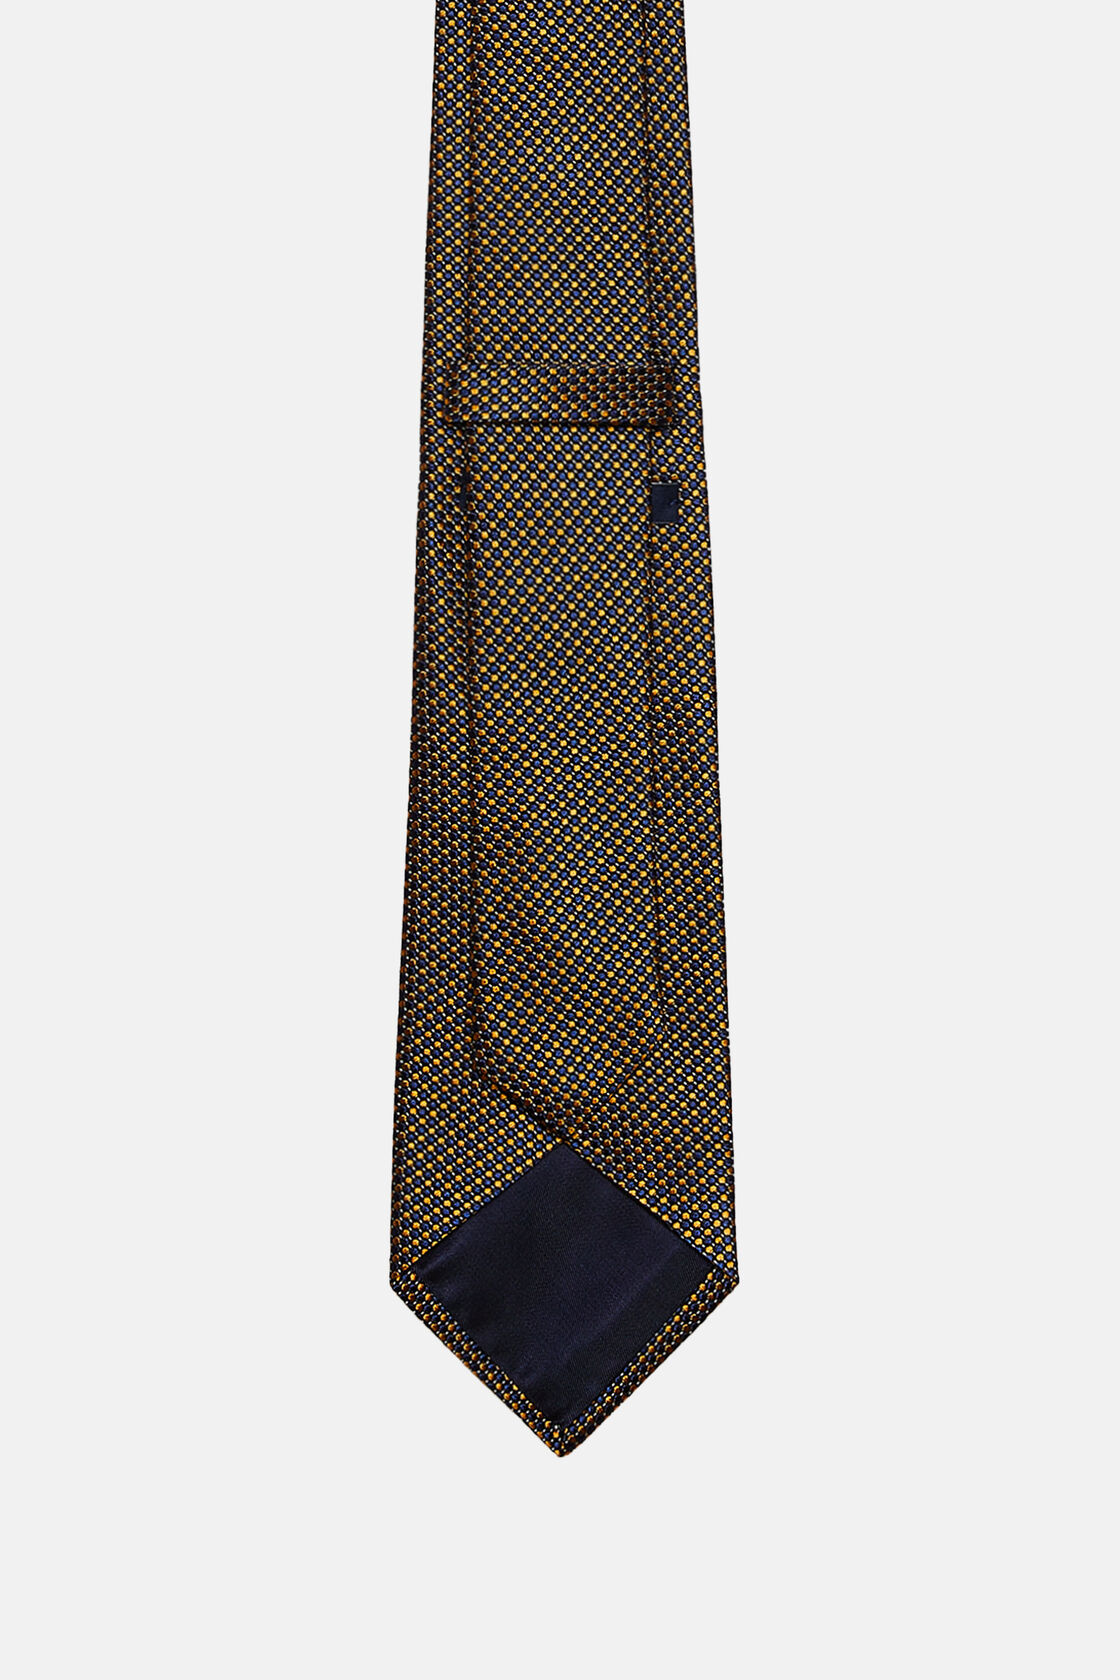 Krawatte aus Seidengemisch mit Punktemuster, Orange, hi-res